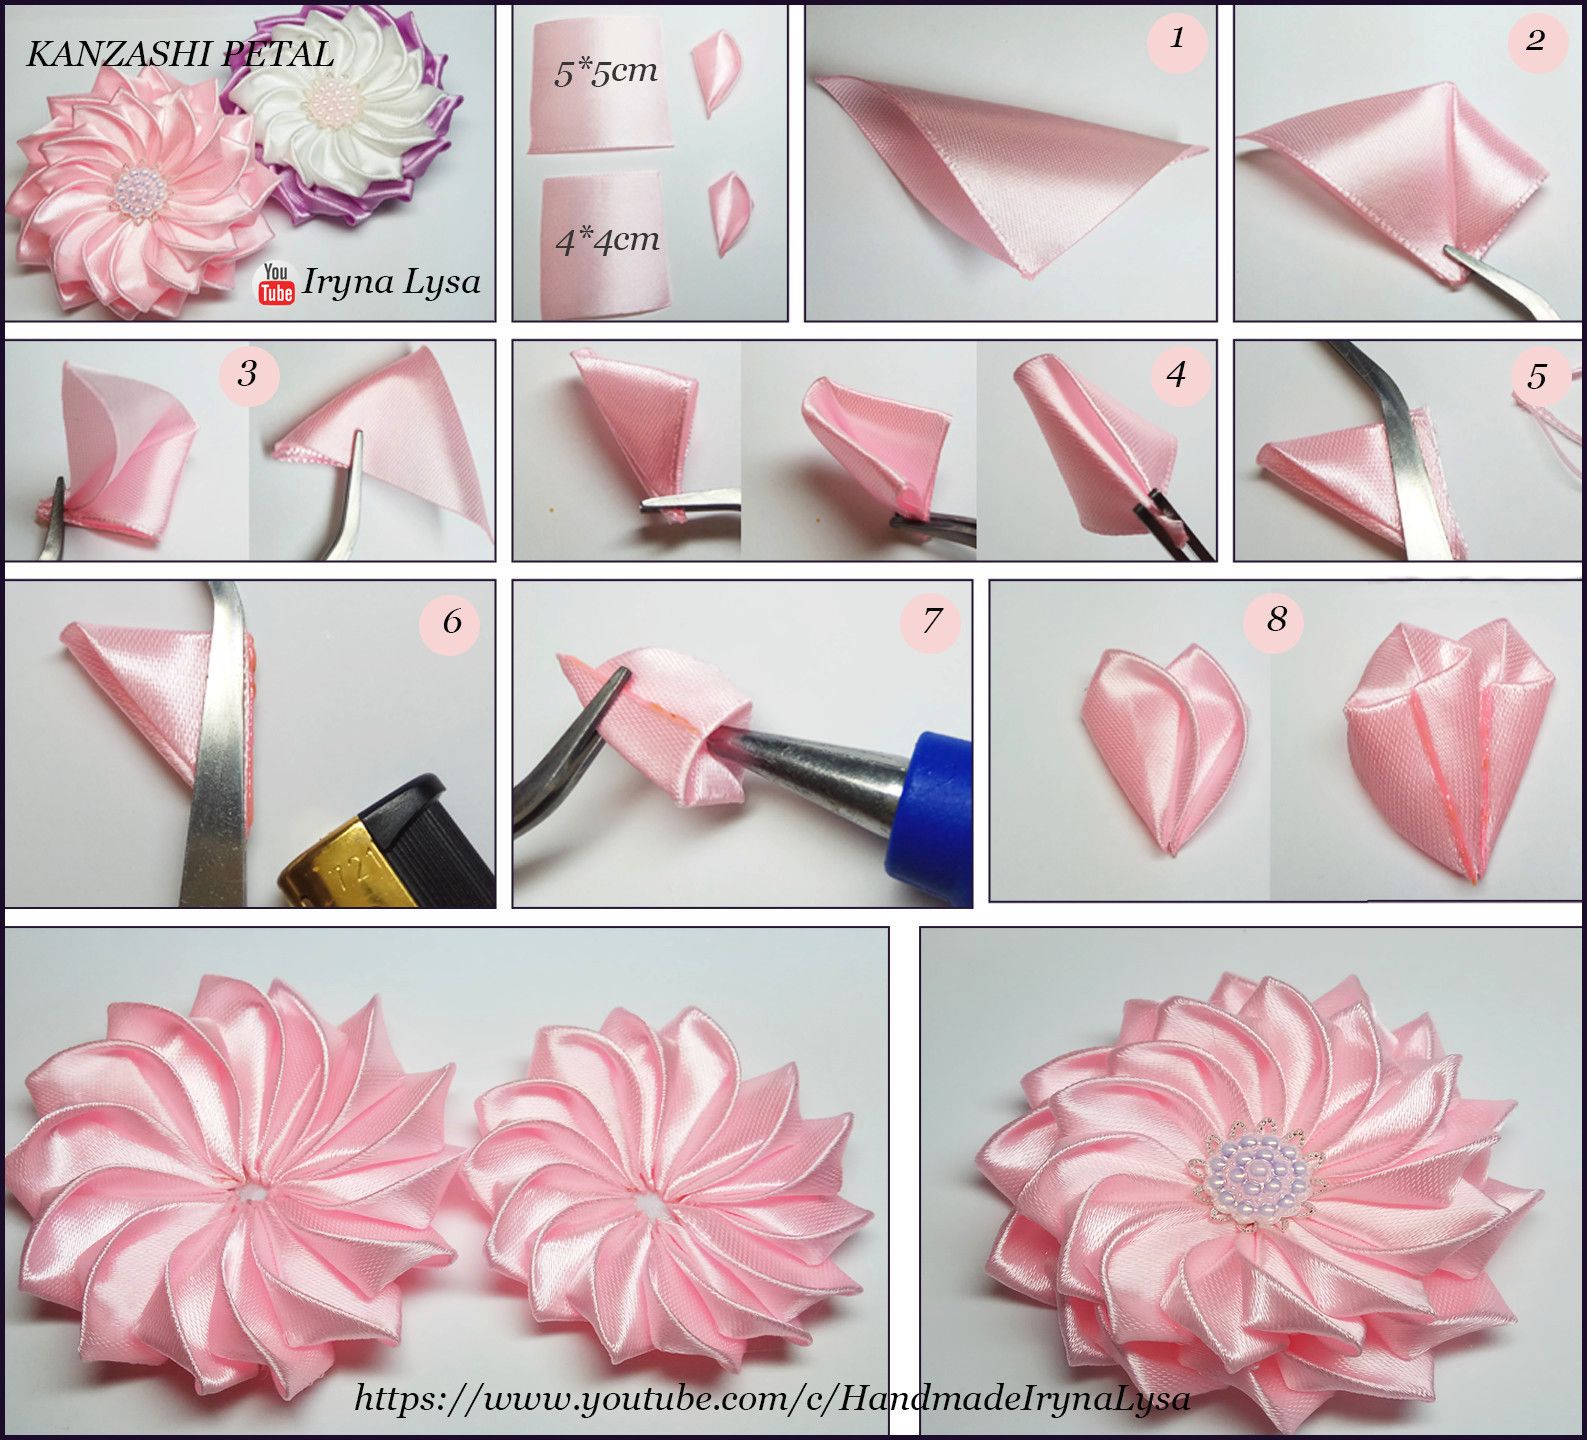 Подробный мастер-класс по изготовлению васильков в технике канзаши с описанием процесса Так же вам будут представлены видео и пошаговые фото уроки